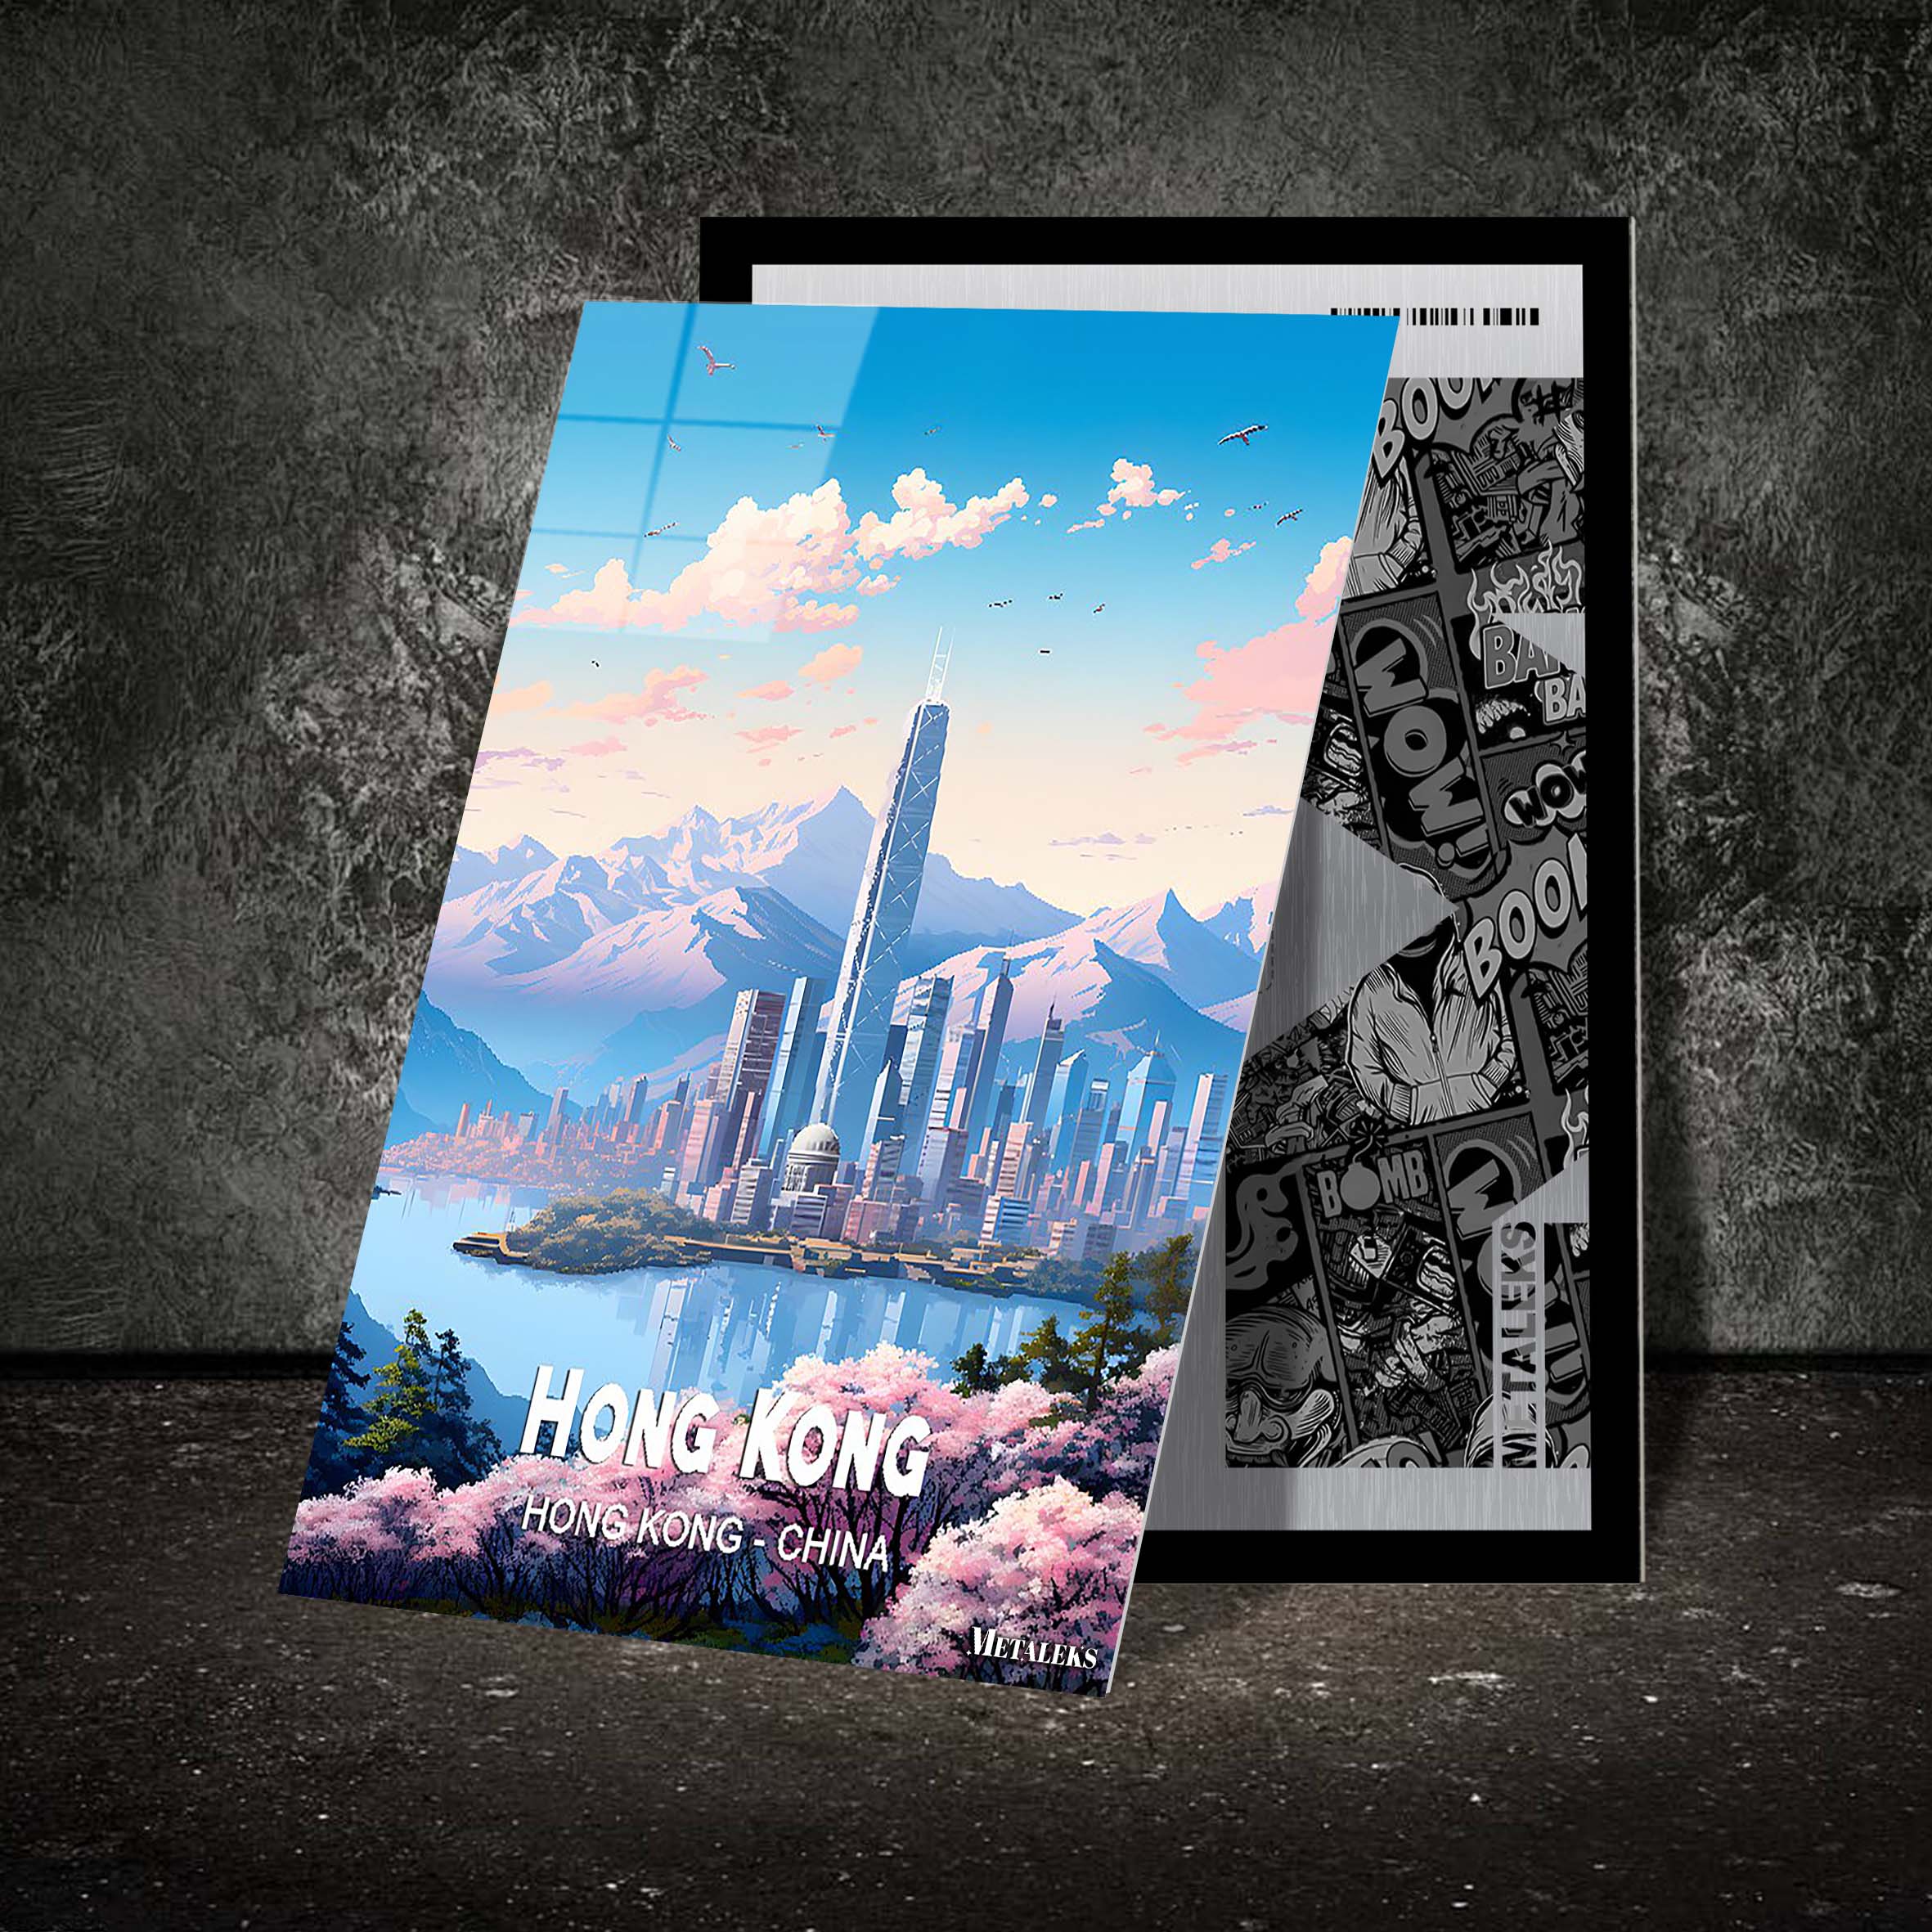 China - Hong Kong-designed by @Travel Poster AI